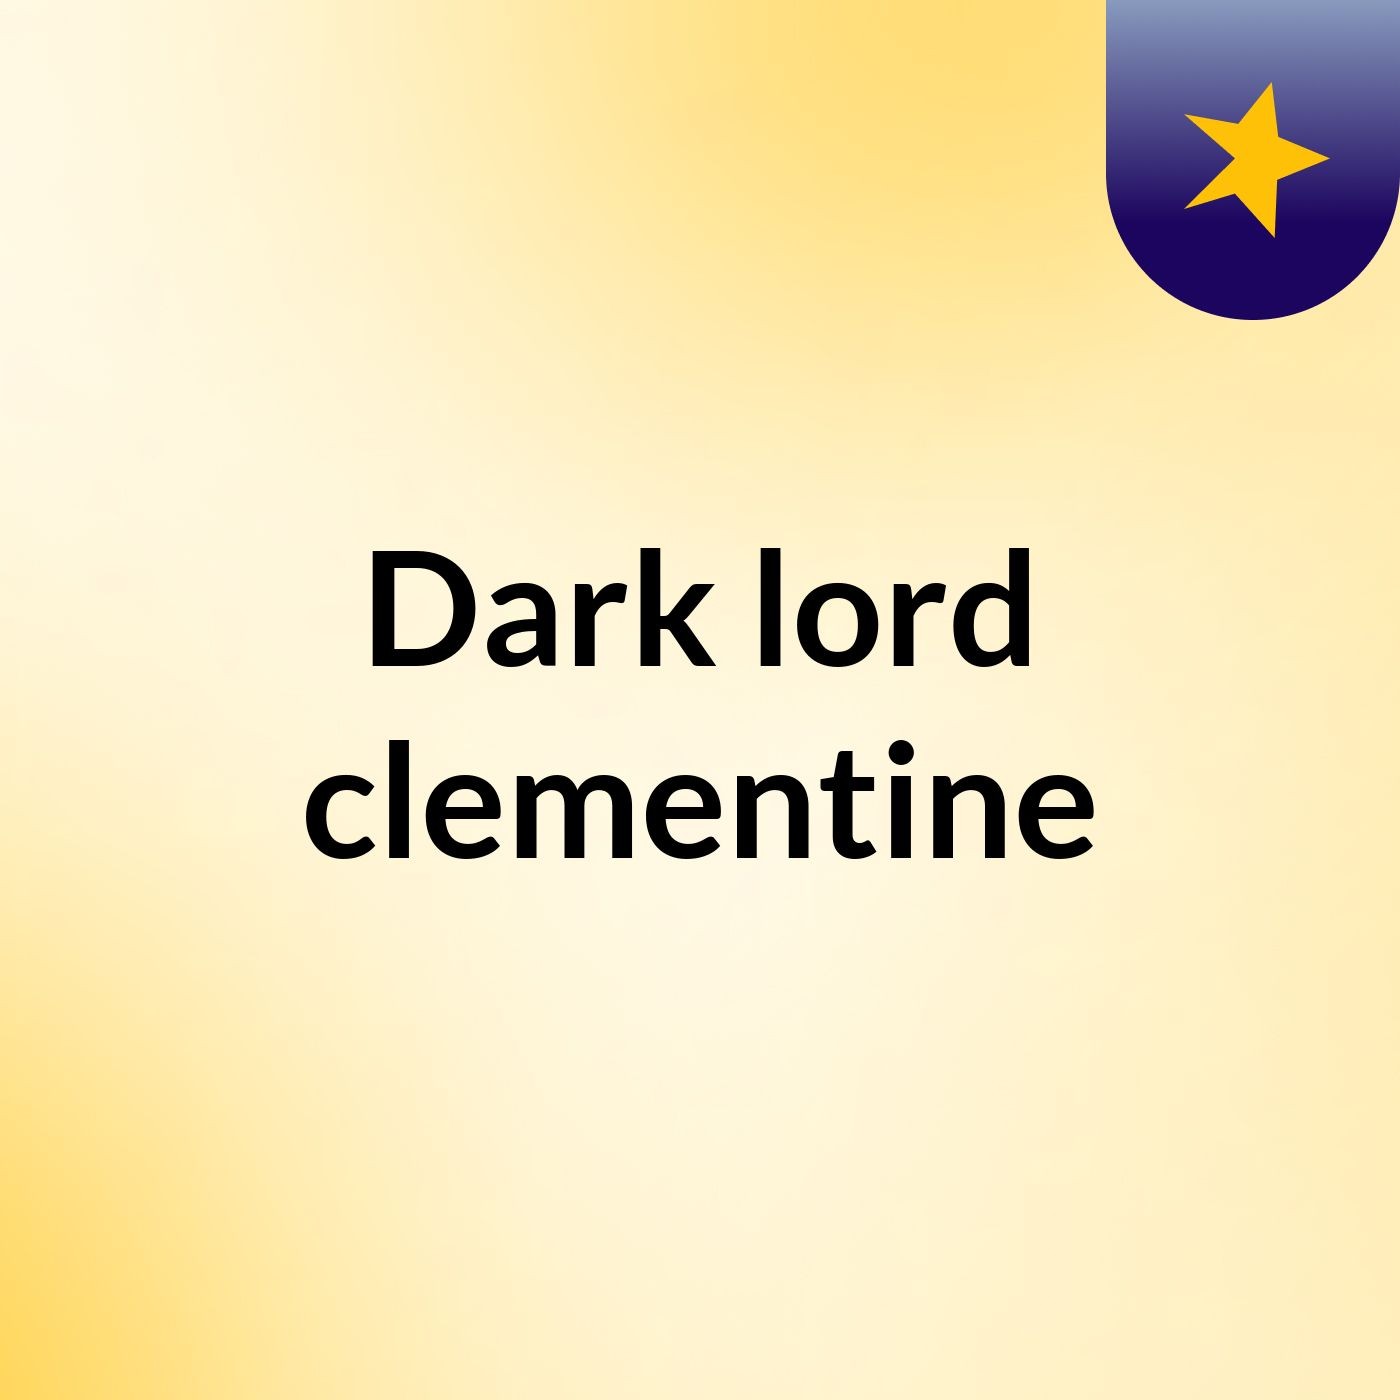 Episode 2 - Dark lord clementine